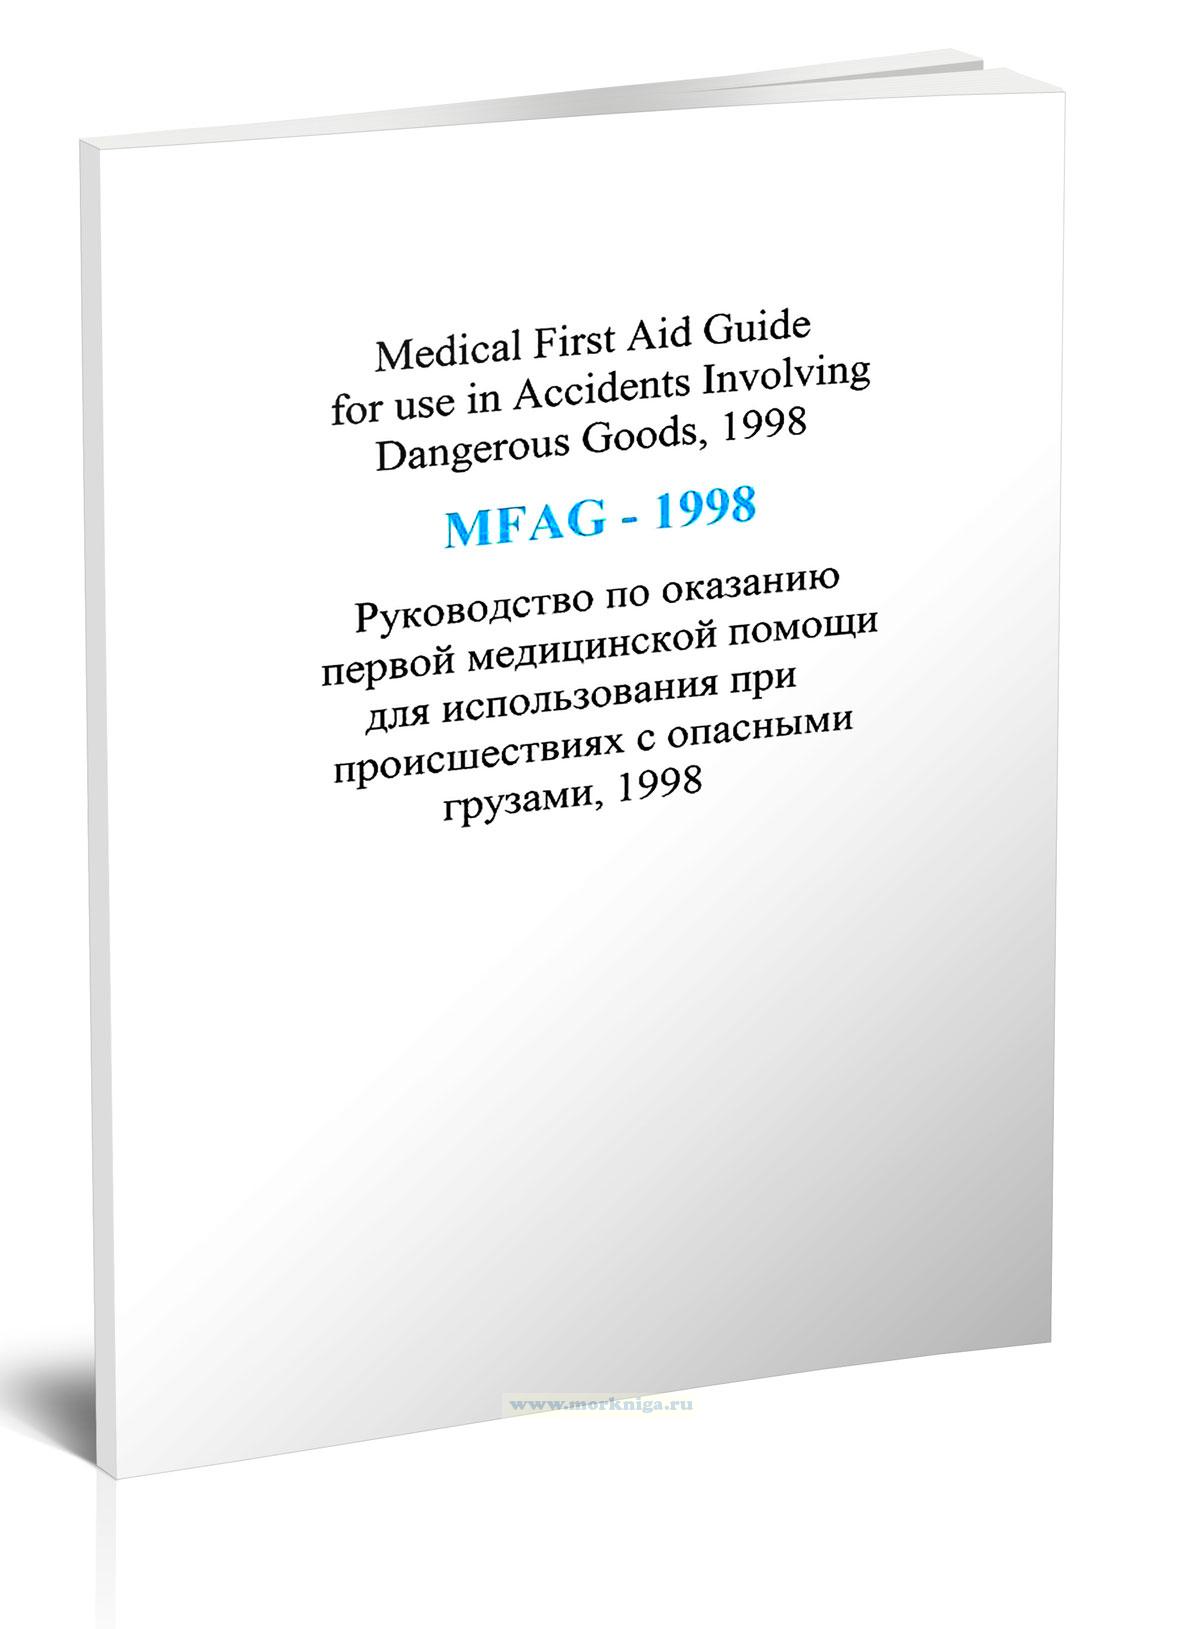 Medical First Aid Guide For Use In Accidents Involving Dangerous Goods (MFAG-1998) - Руководство по оказанию первой медицинской помощи для использования при происшествиях с опасными грузами, 1998